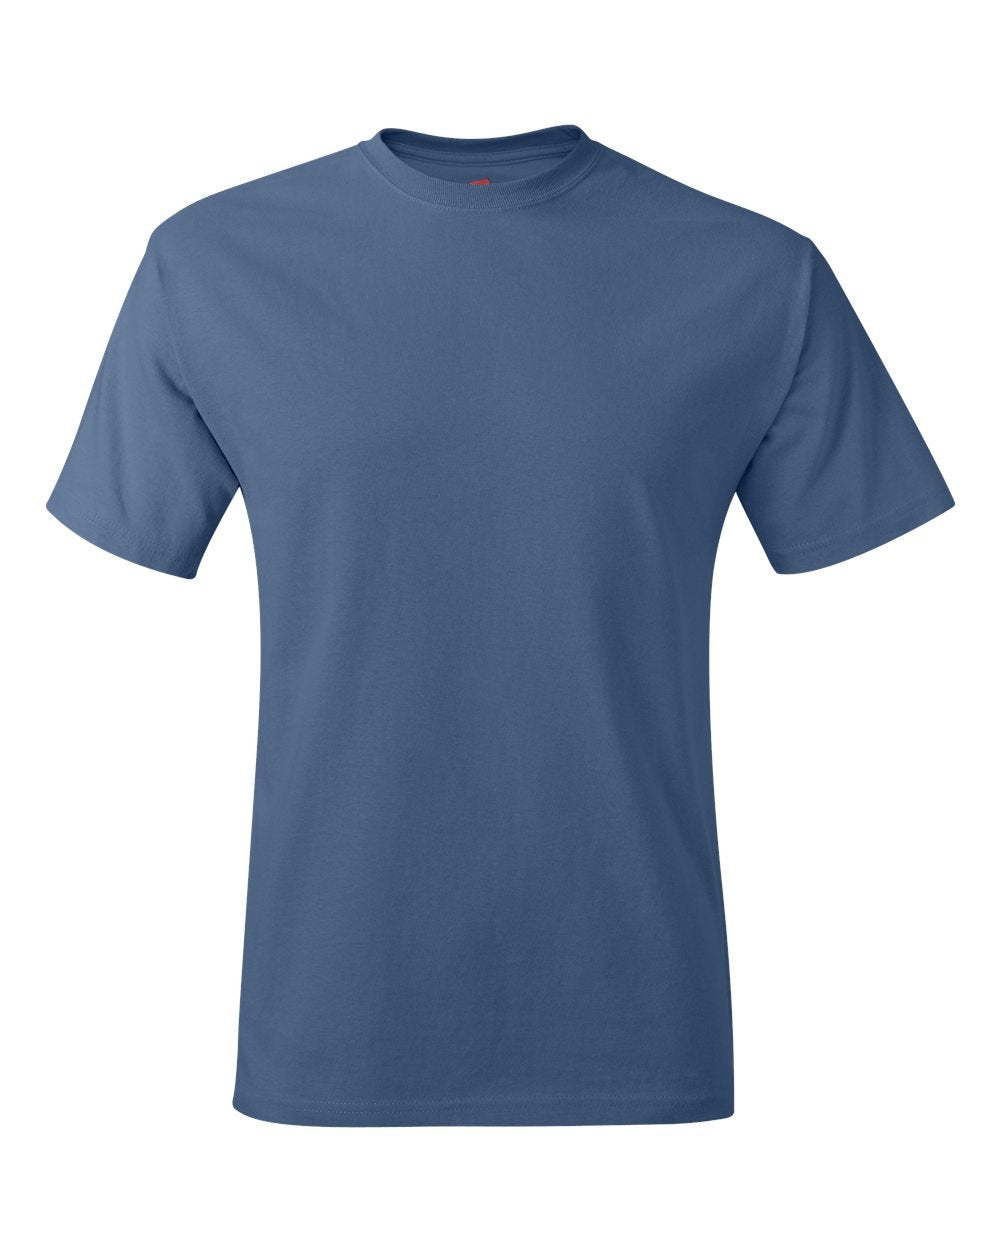 Hanes Tagless t-Shirt (5250T)